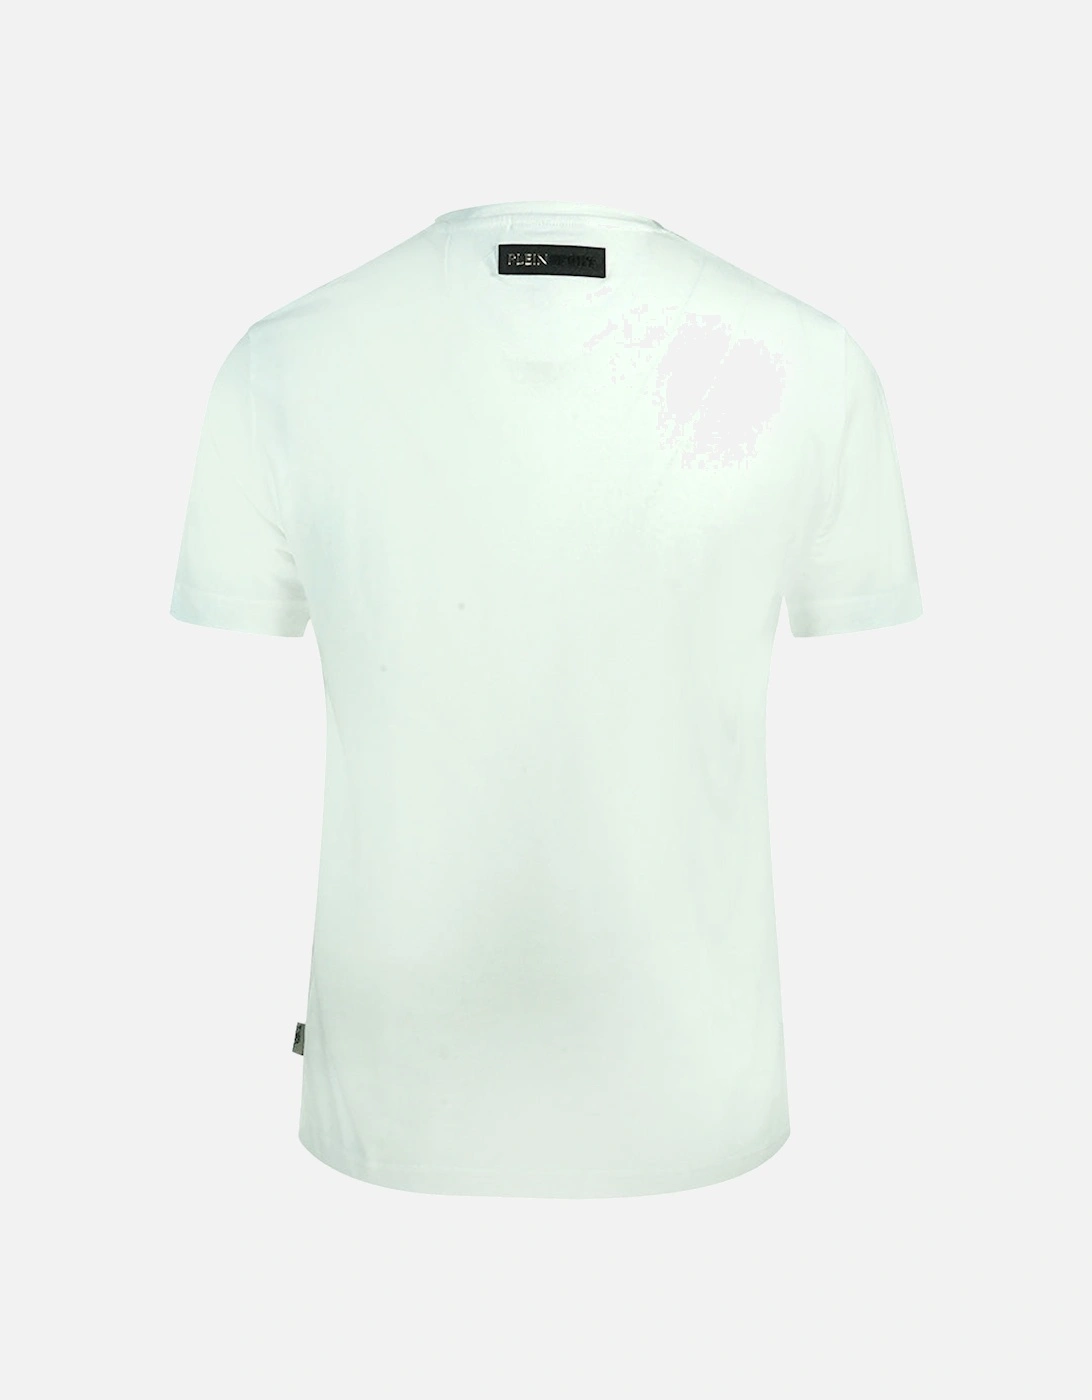 Plein Sport Equipment White T-Shirt